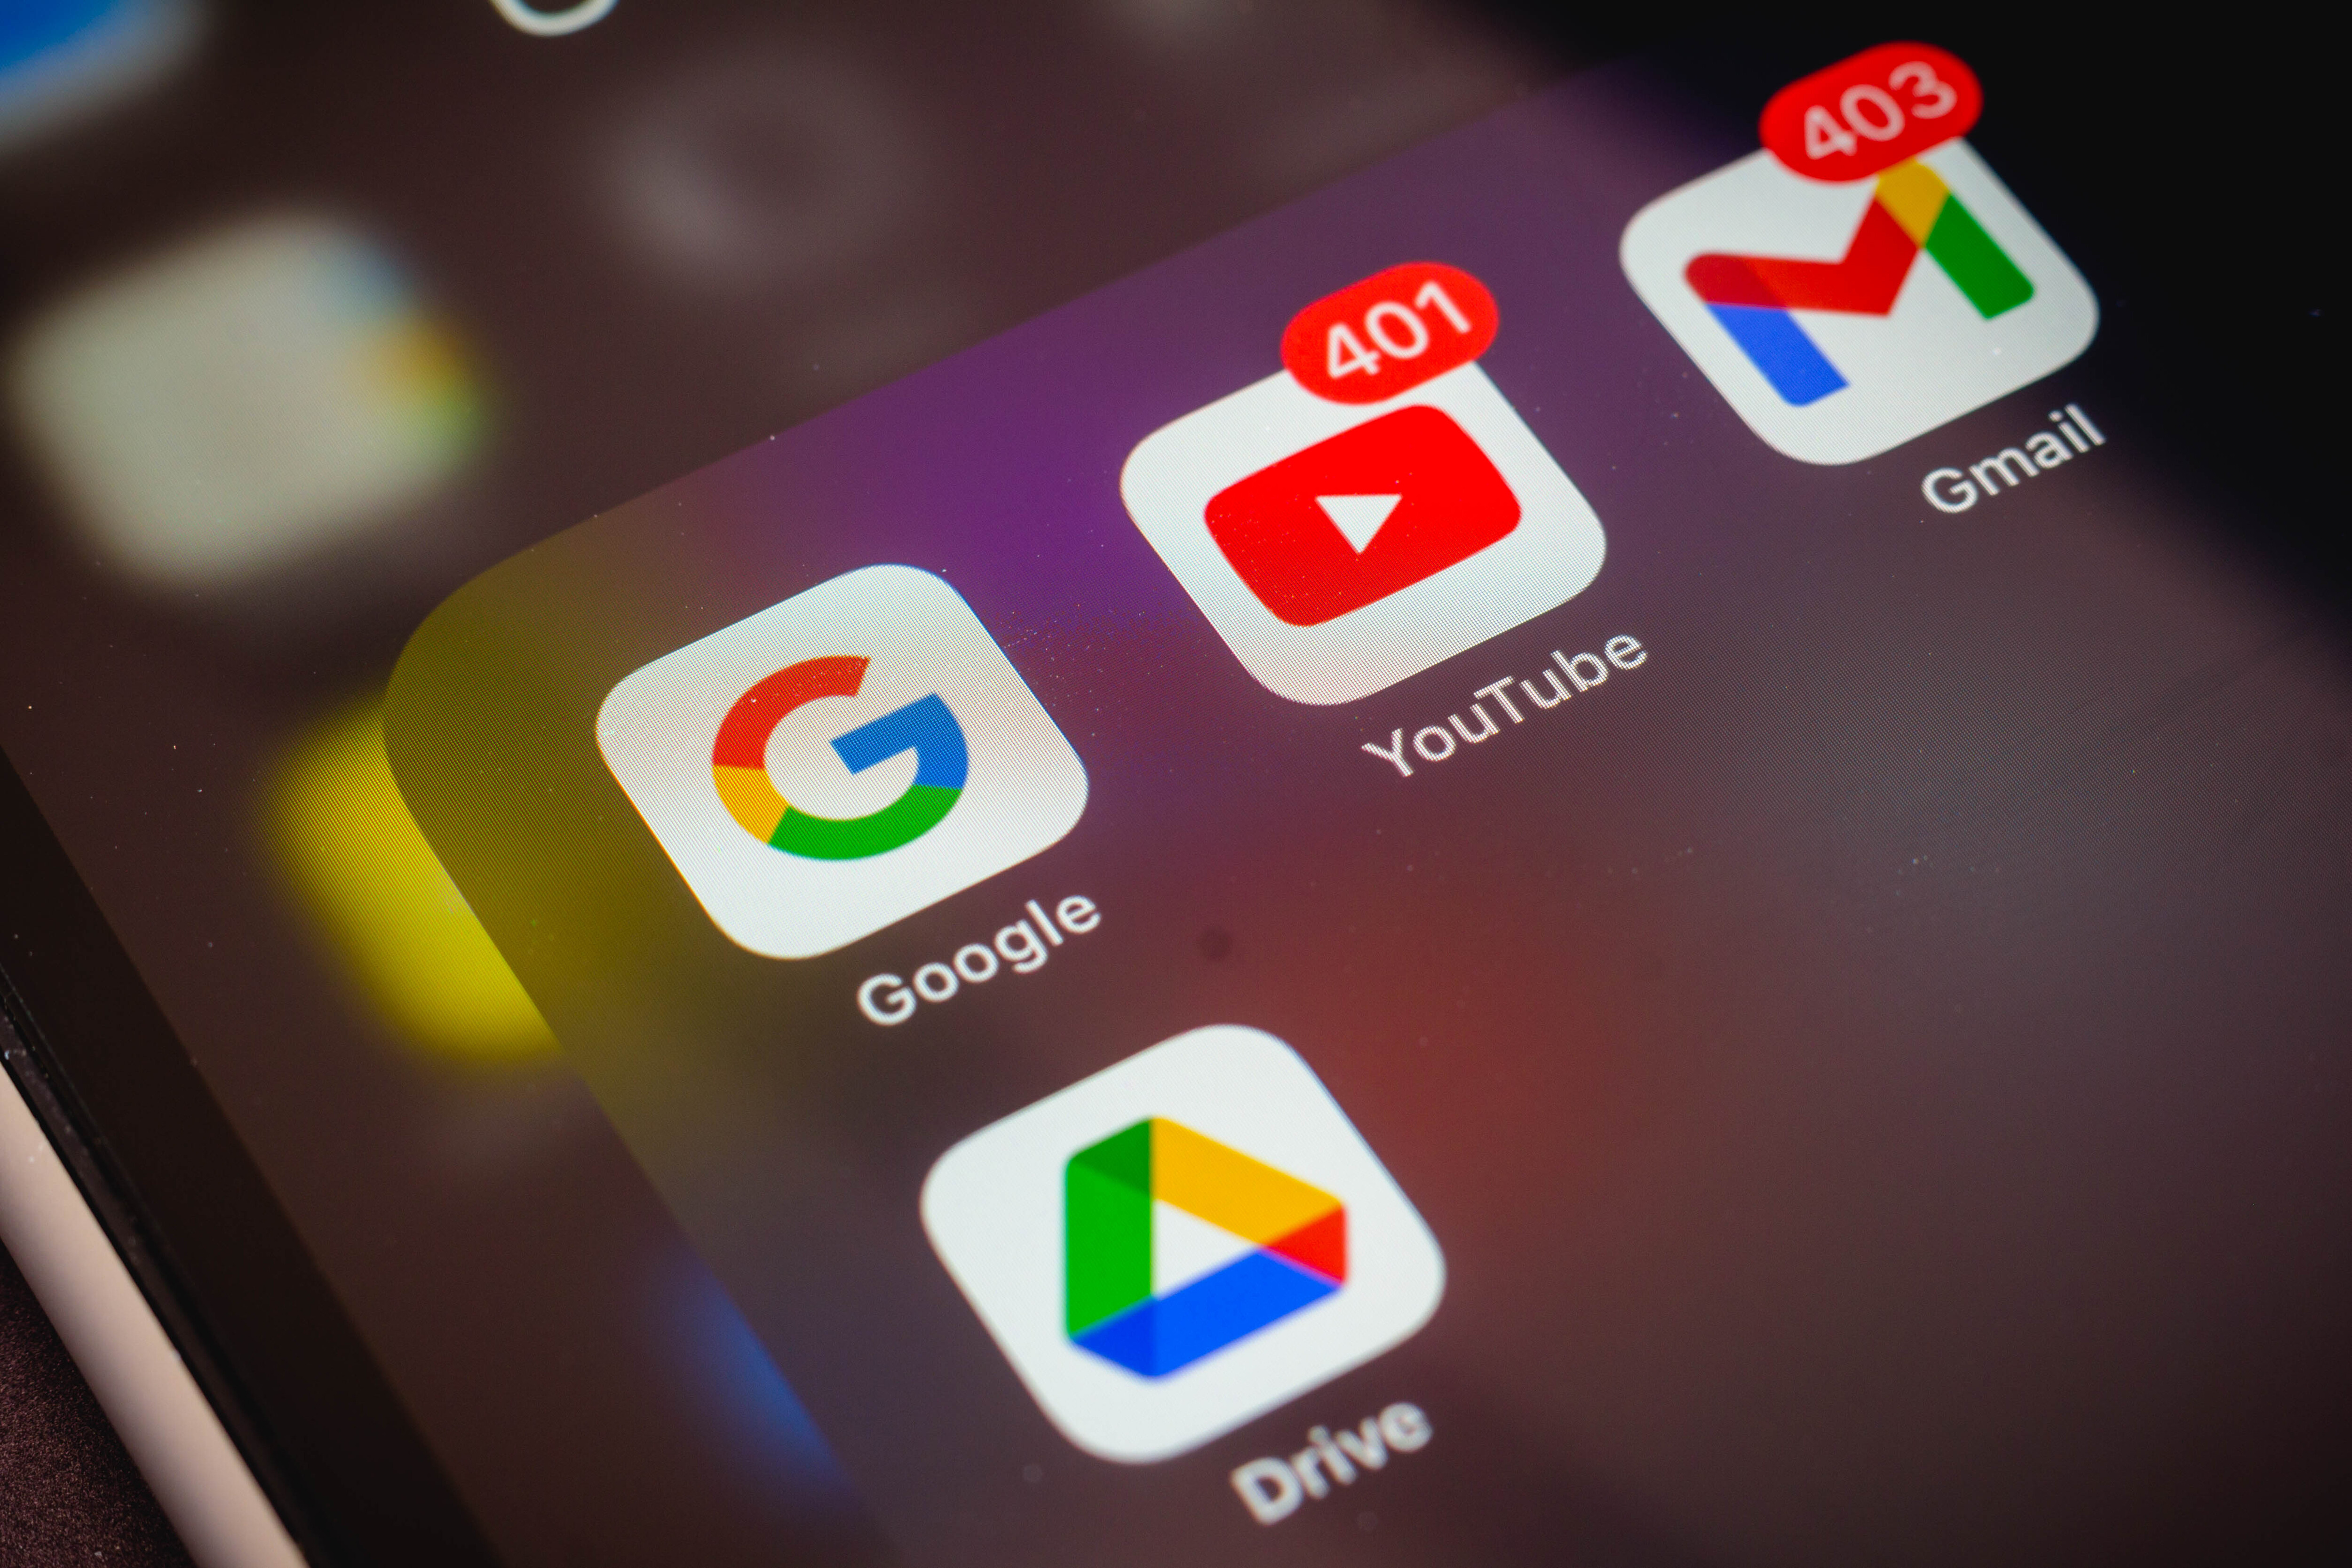 Sur Google Drive, des fichiers disparaissent mystérieusement